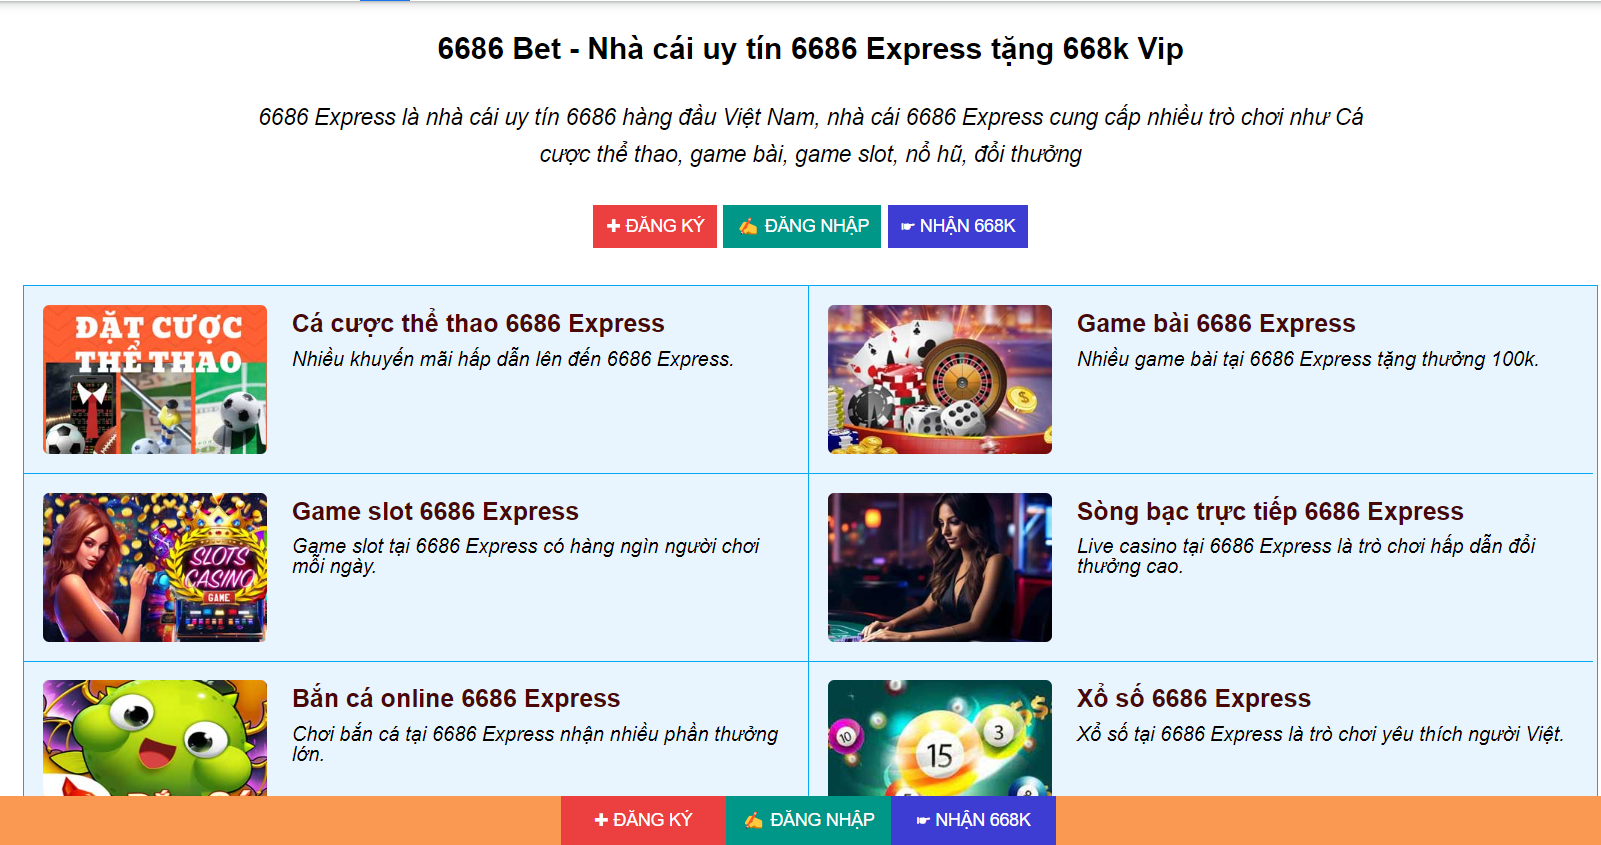 Cá cược online tại nhà cái 6686 Express và trải nghiệm thêm các tính năng mới.